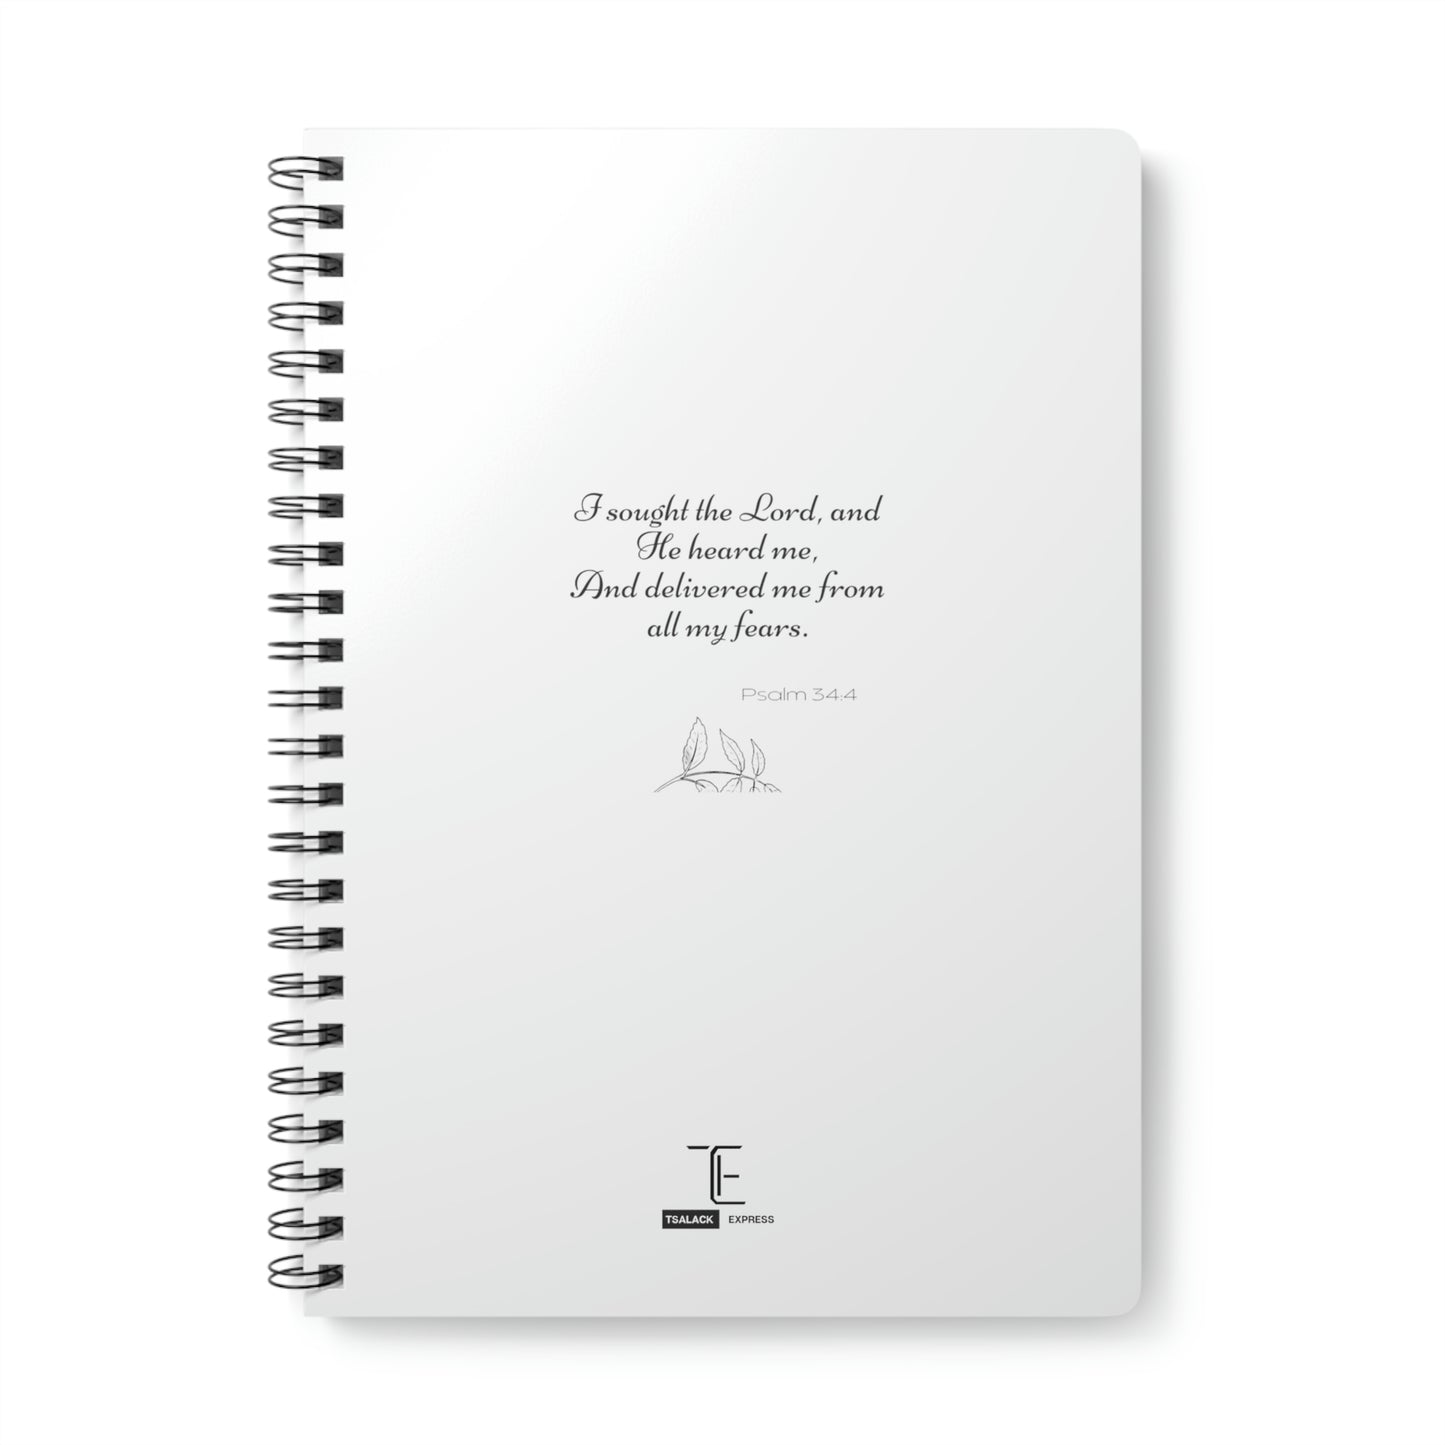 Tsalack Express Insp Wirobound Softcover Notebook, A5